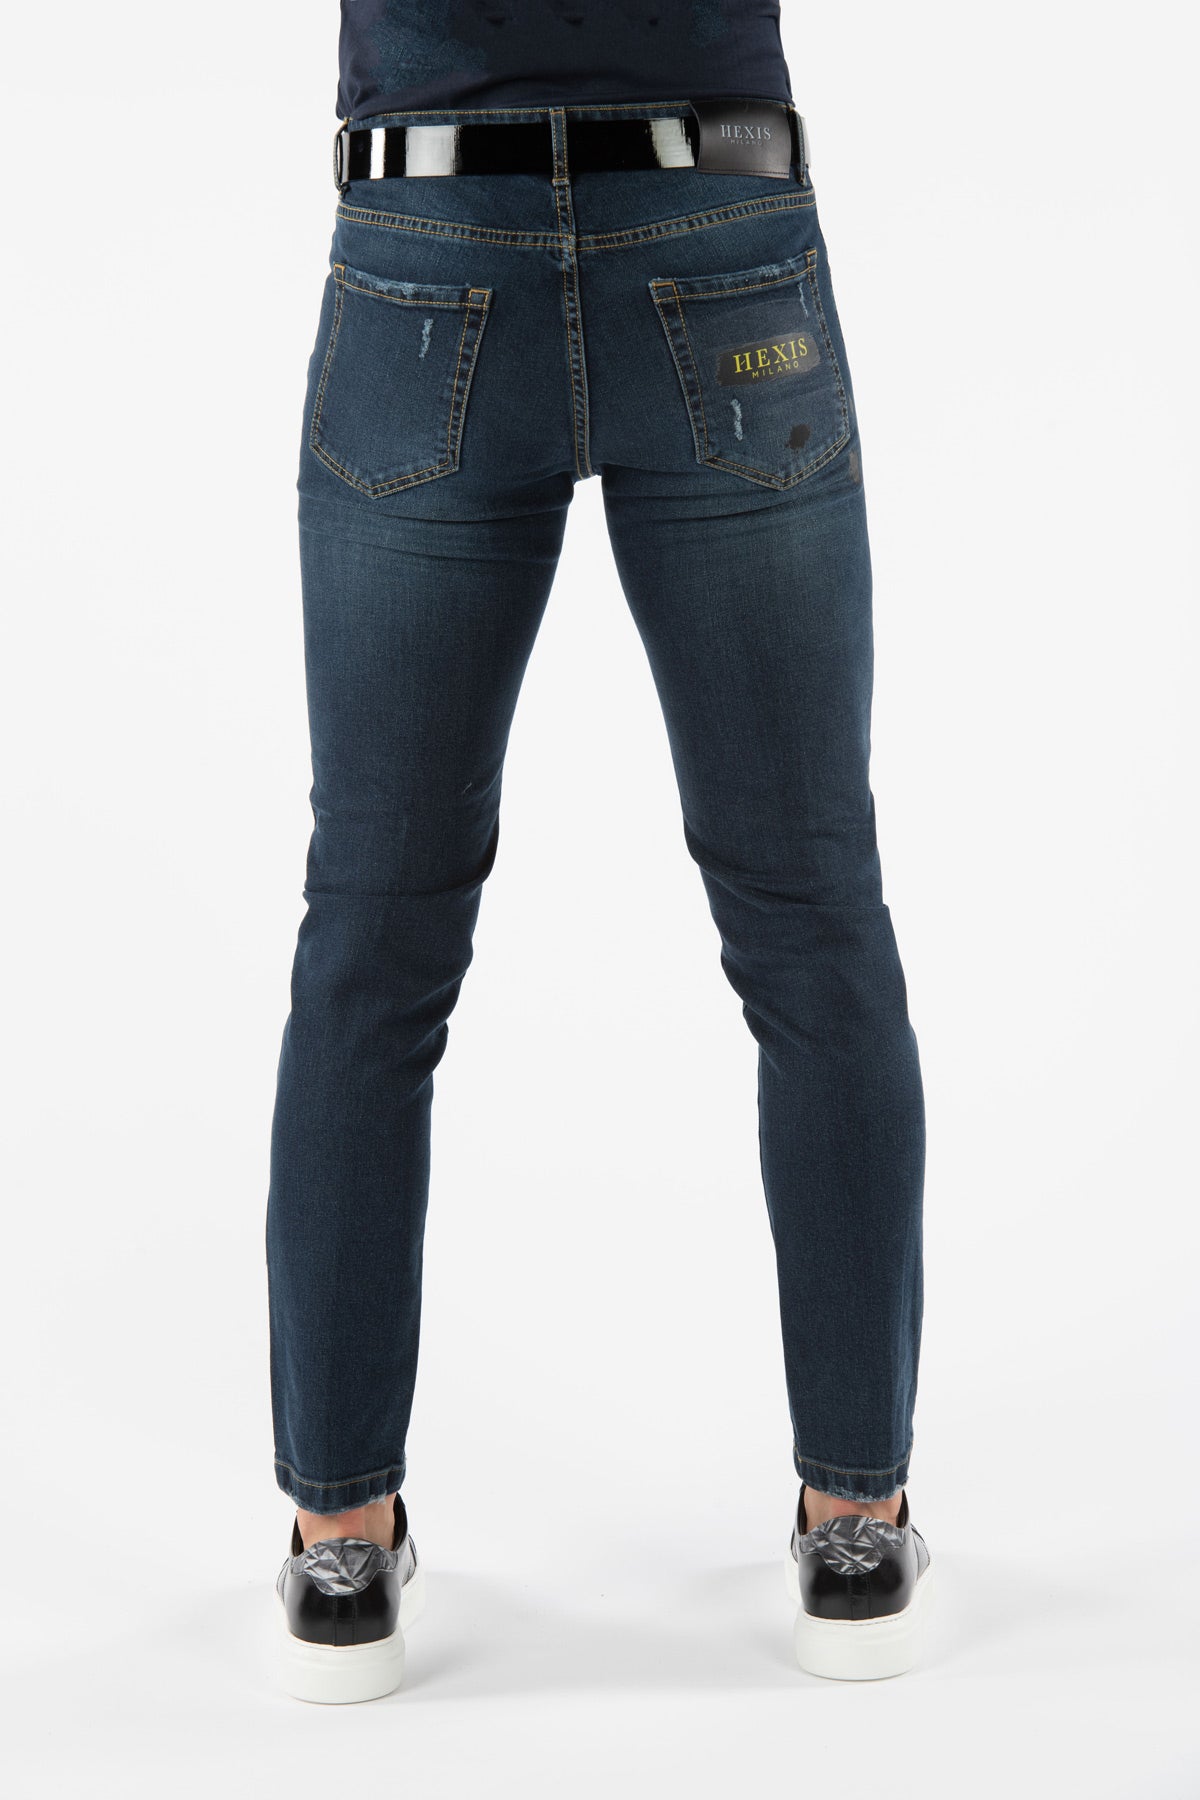 Moorgate HEXIS-strečové džíny 